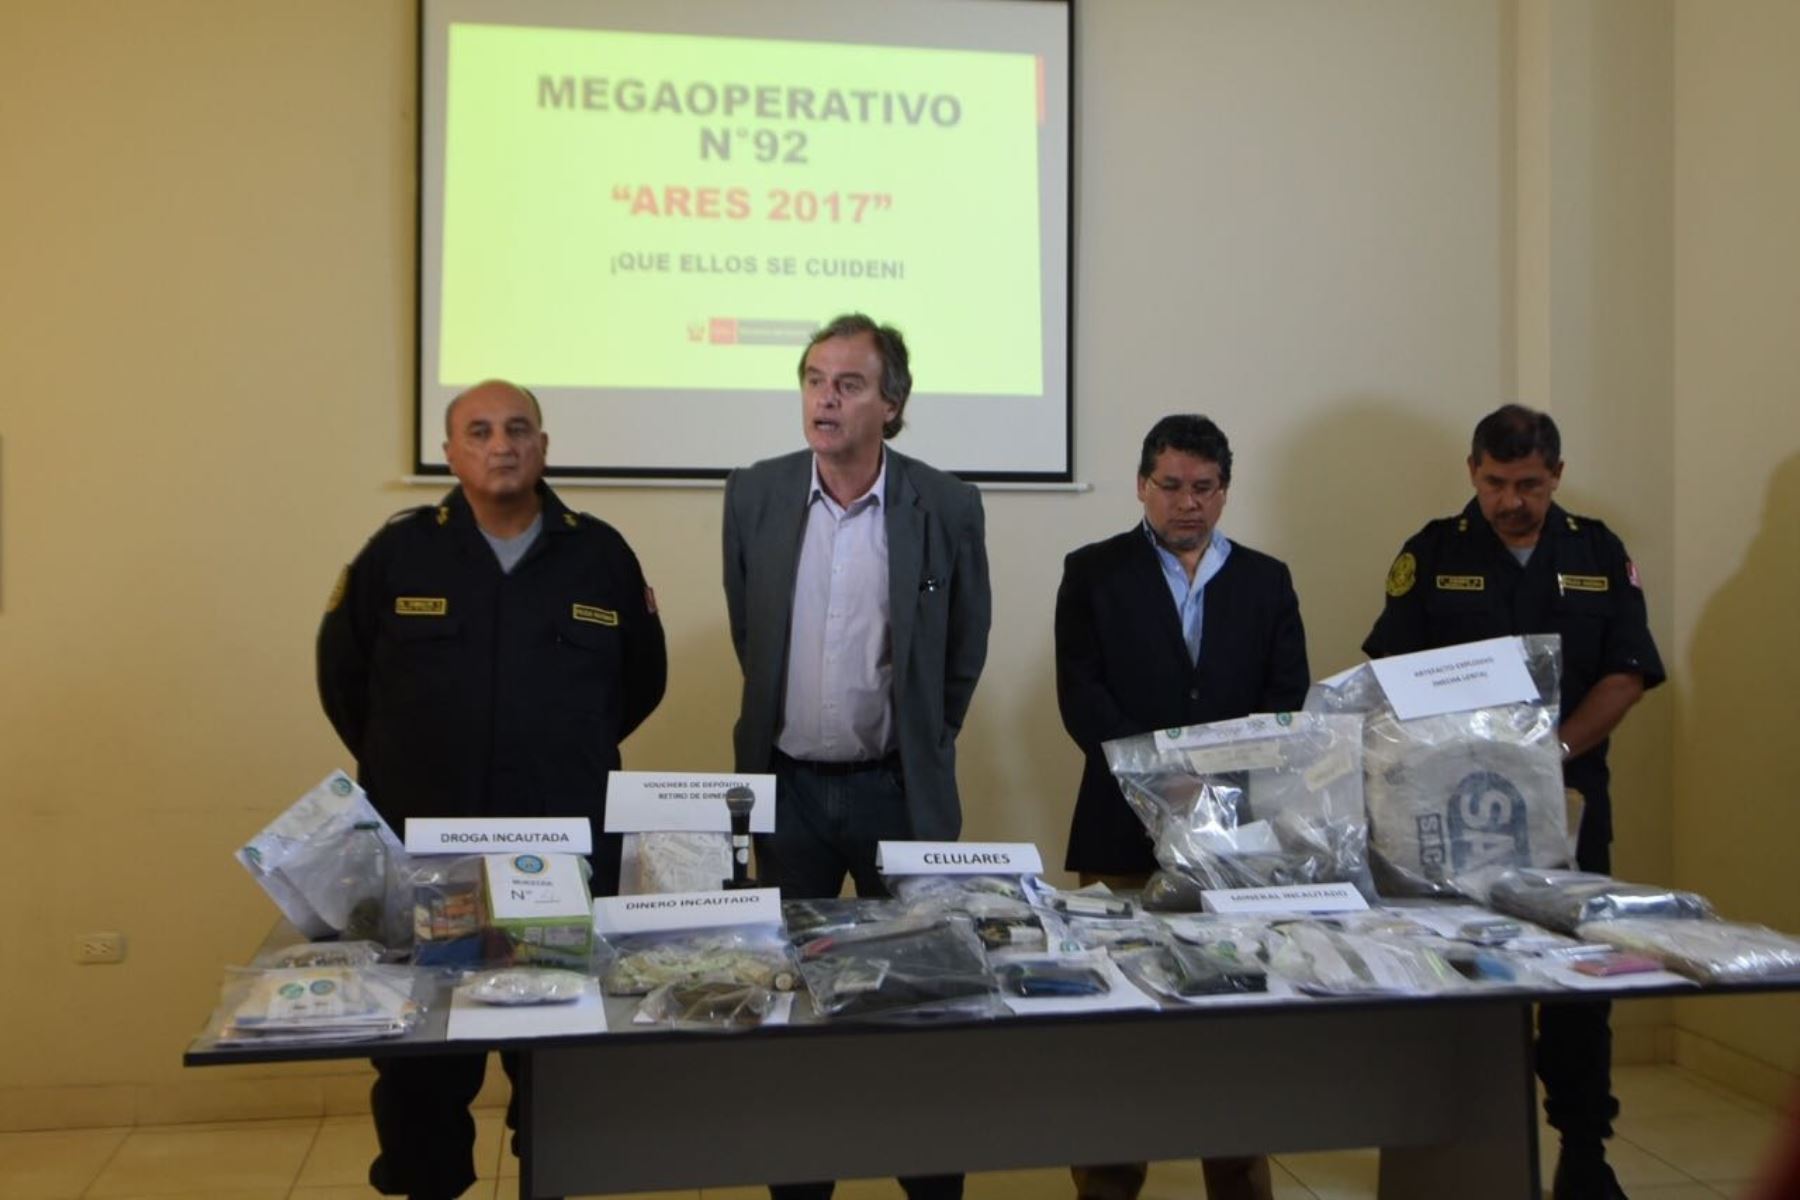 El ministro Carlos Basombrío destacó el trabajo conjunto de la Policía Nacional, el Ministerio Público y el Poder Judicial, para desbaratar dicha banda delincuencial.